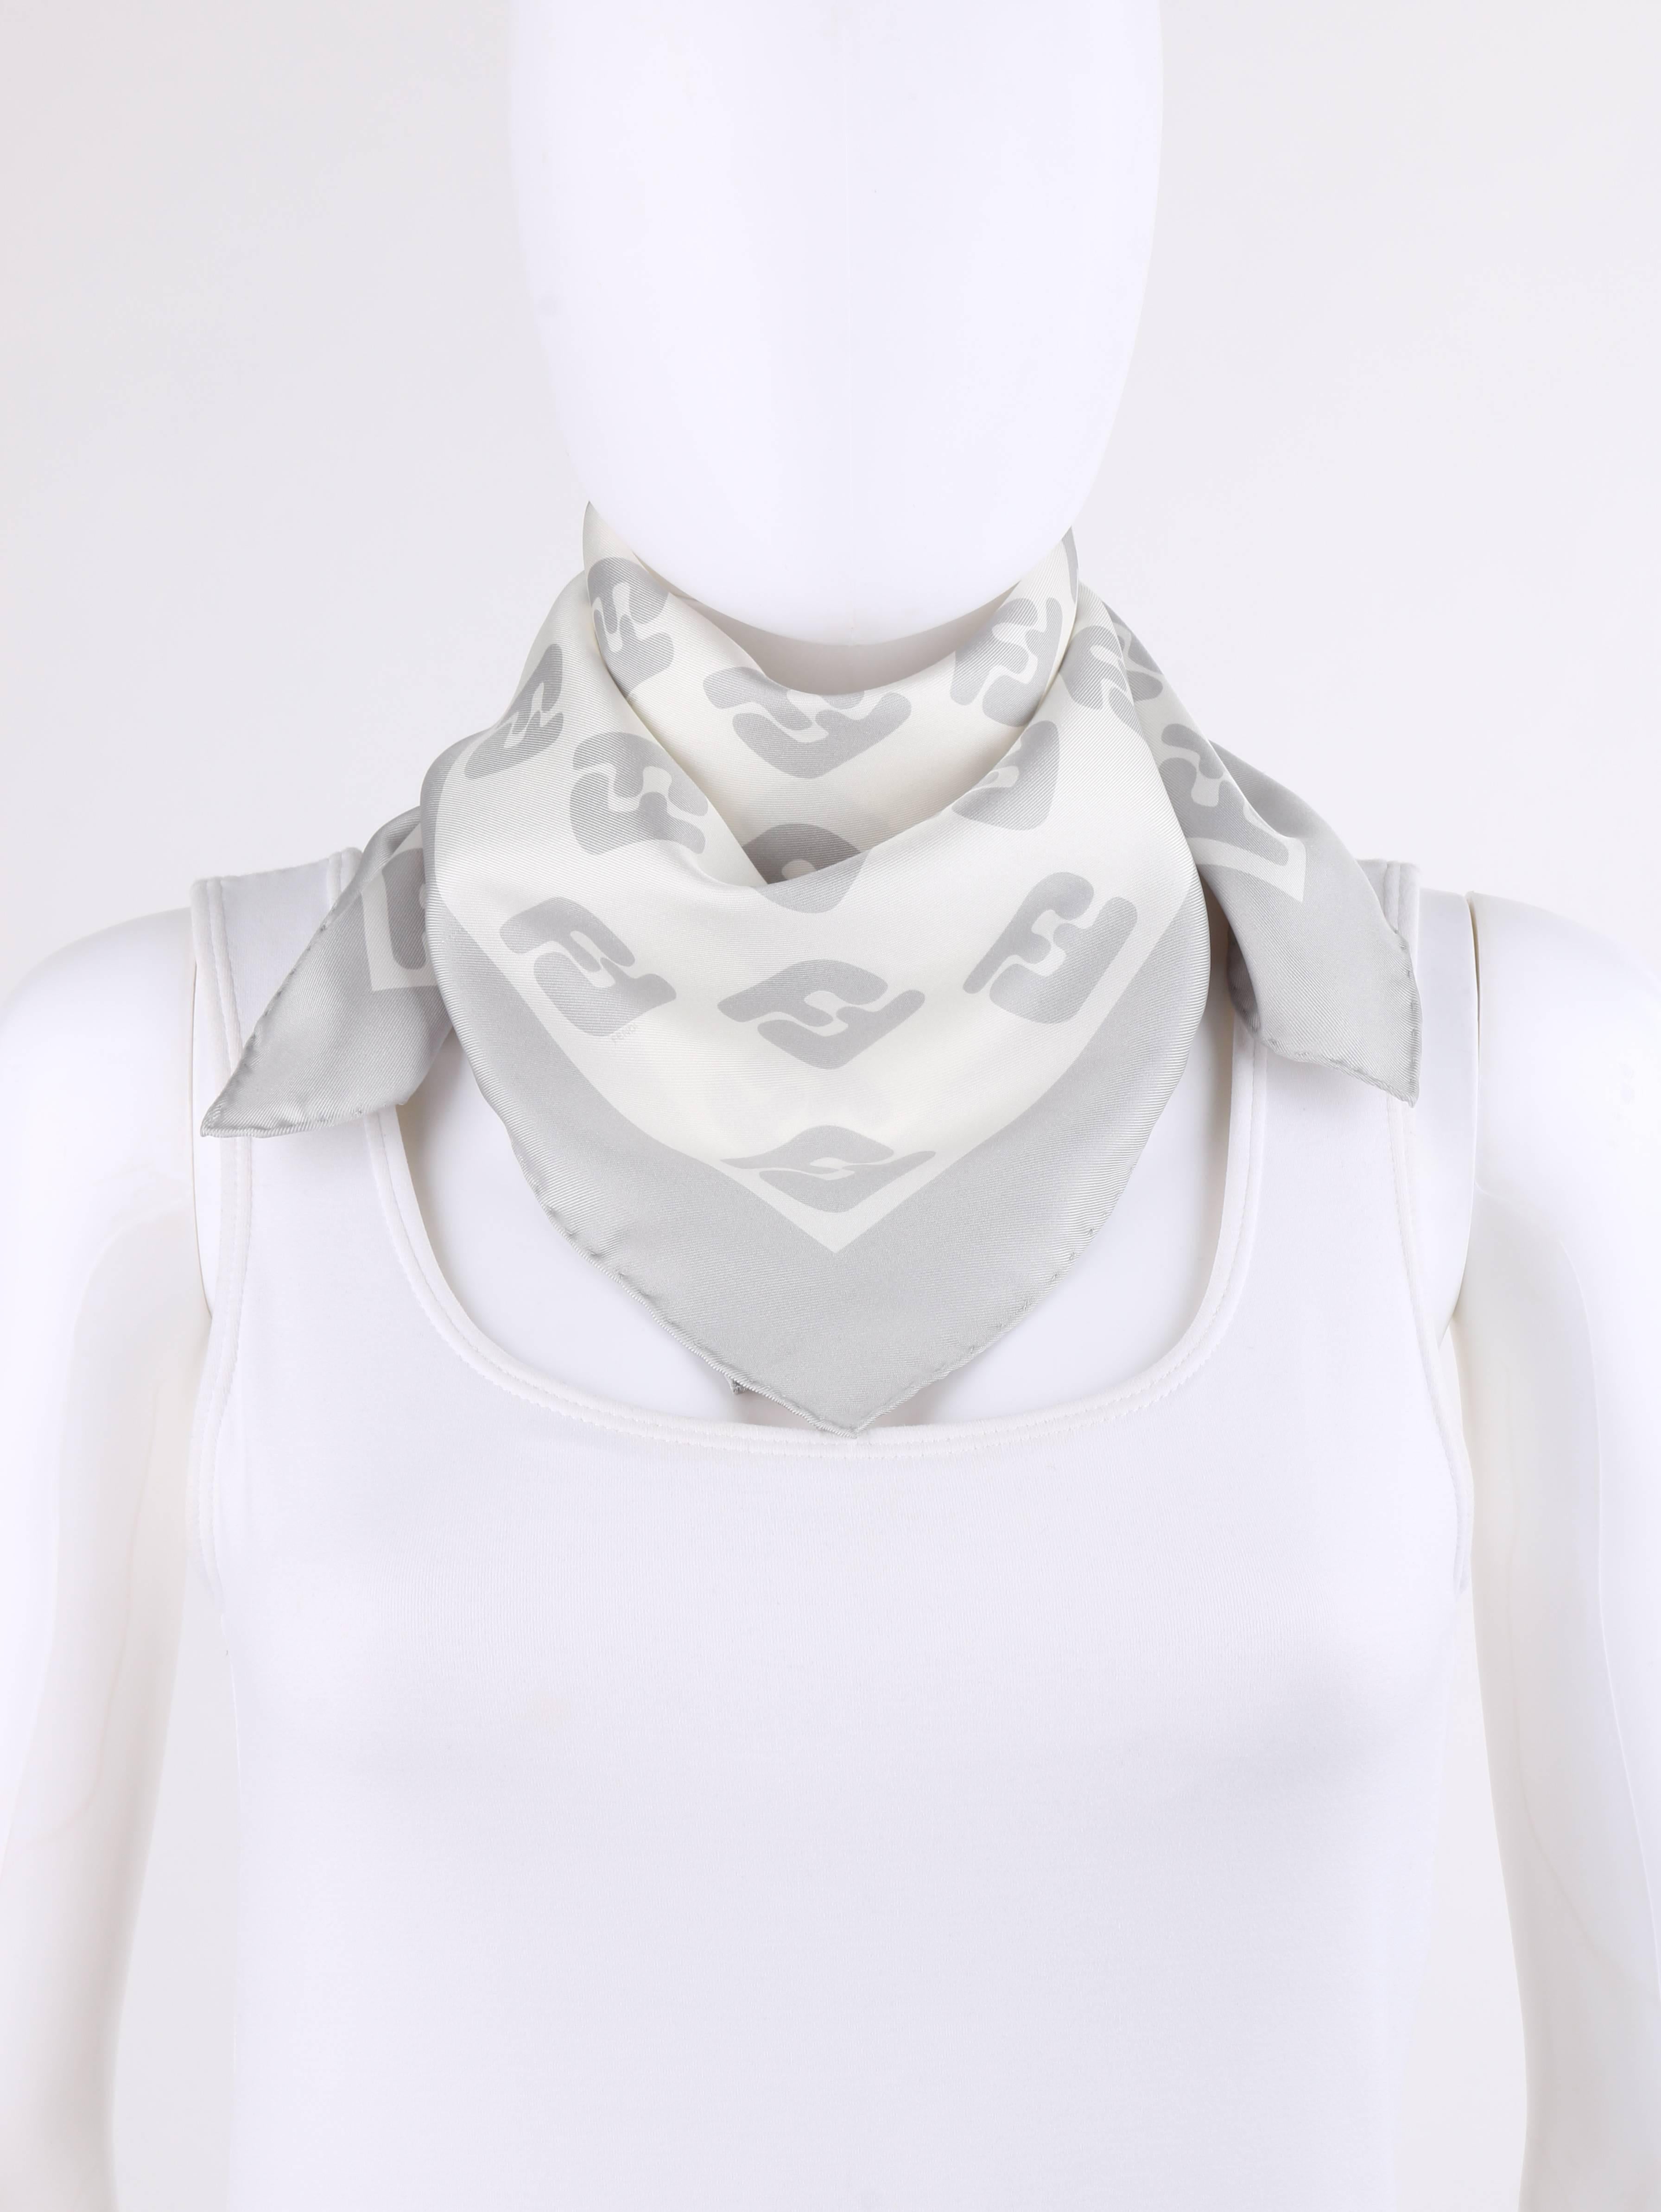 Fendi winter white and silver gray Zucca print silk scarf. Silver gray solid boarder. Winter white center with silver gray Zucca (